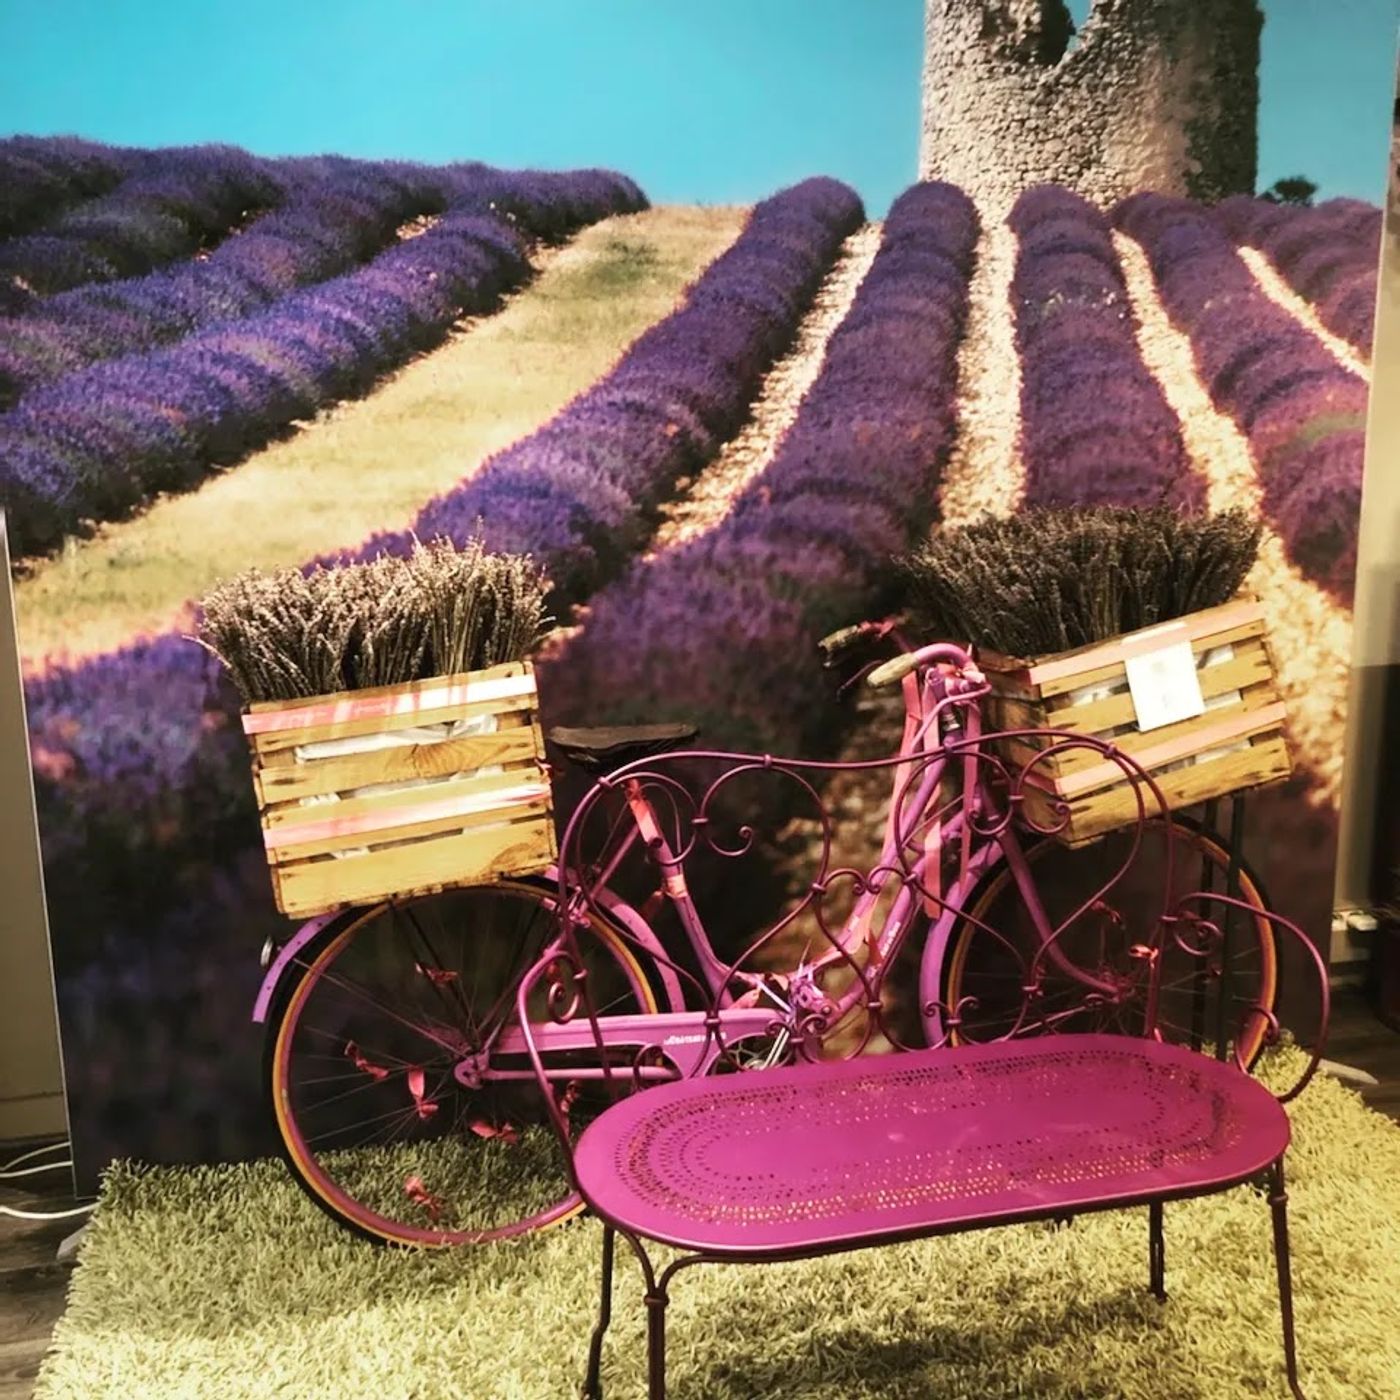 Duftendes Lavendel-Paradies entdecken